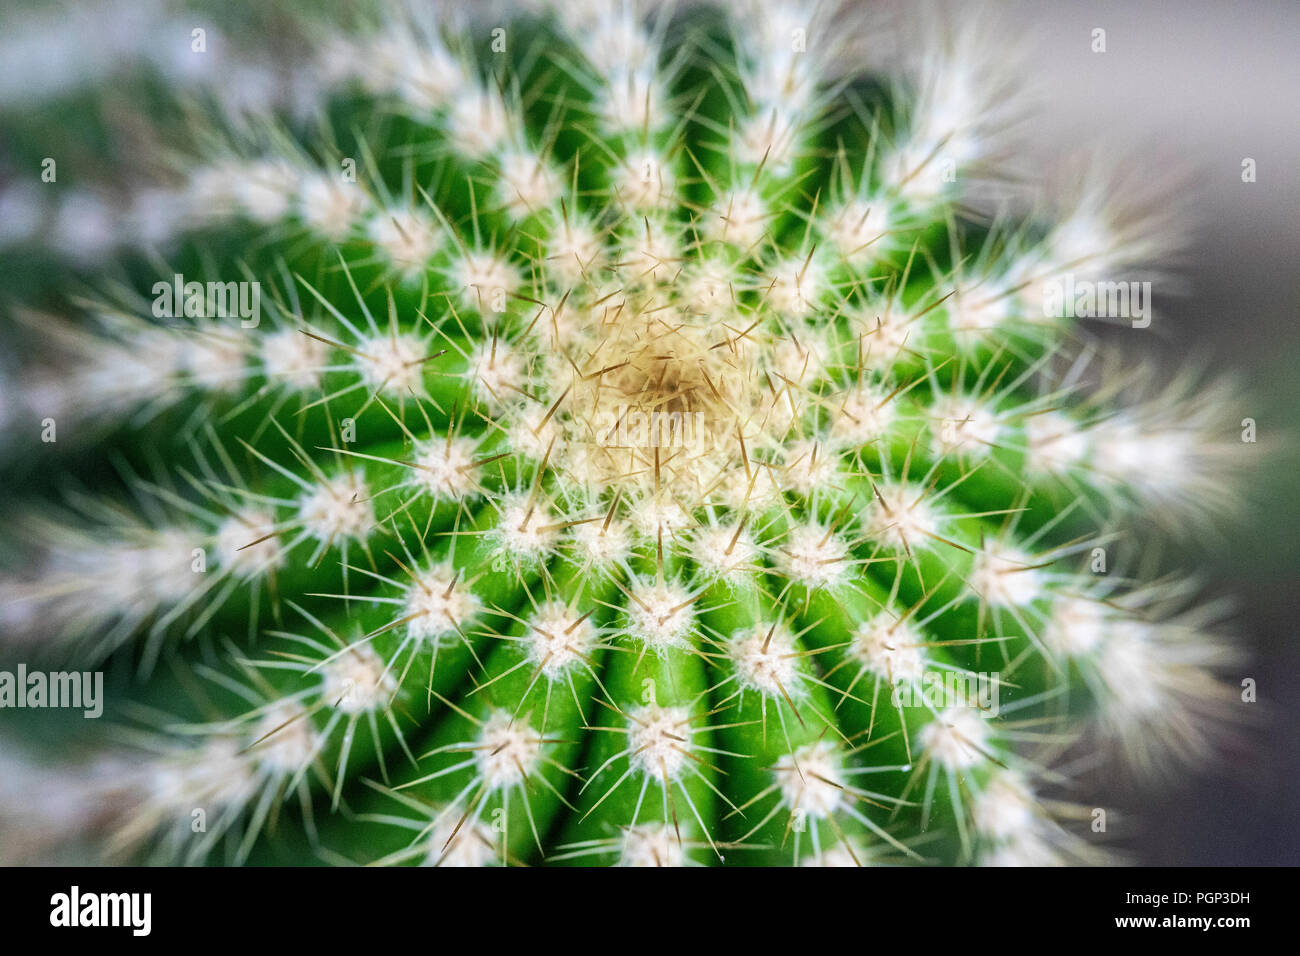 Dettaglio di cactus, top di cactus, close-up Foto Stock